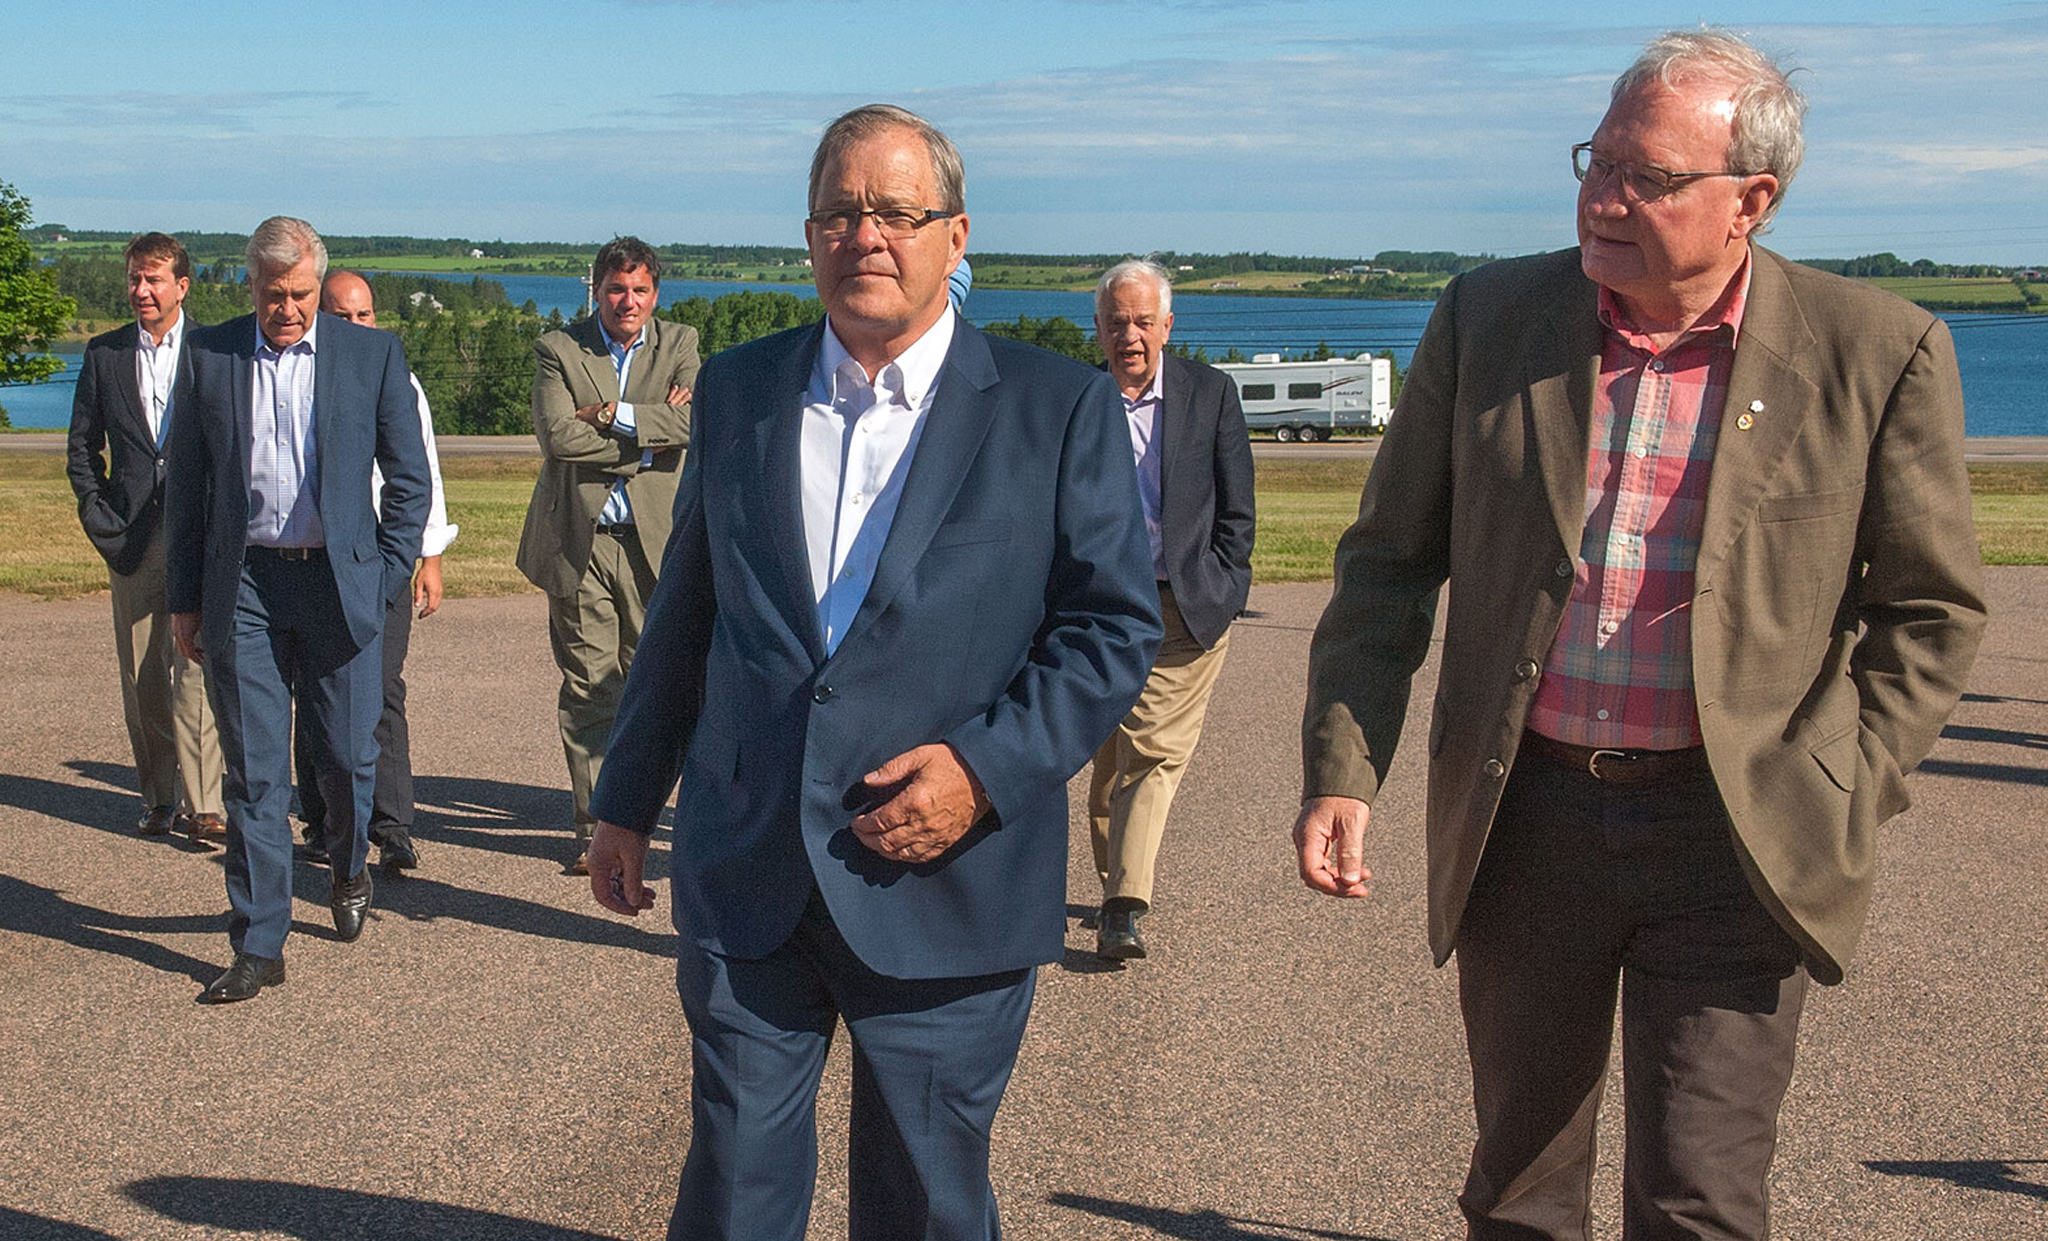 Le 4 juillet 2016 - L'honorable Lawrence MacAulay, ministre de l'Agriculture et de l'Agroalimentaire (au centre), et l'honorable Wade MacLauchlan, premier ministre de l'Île-du-Prince-Édouard (à droite), suivis de divers ministres fédéraux et premiers ministres provinciaux.